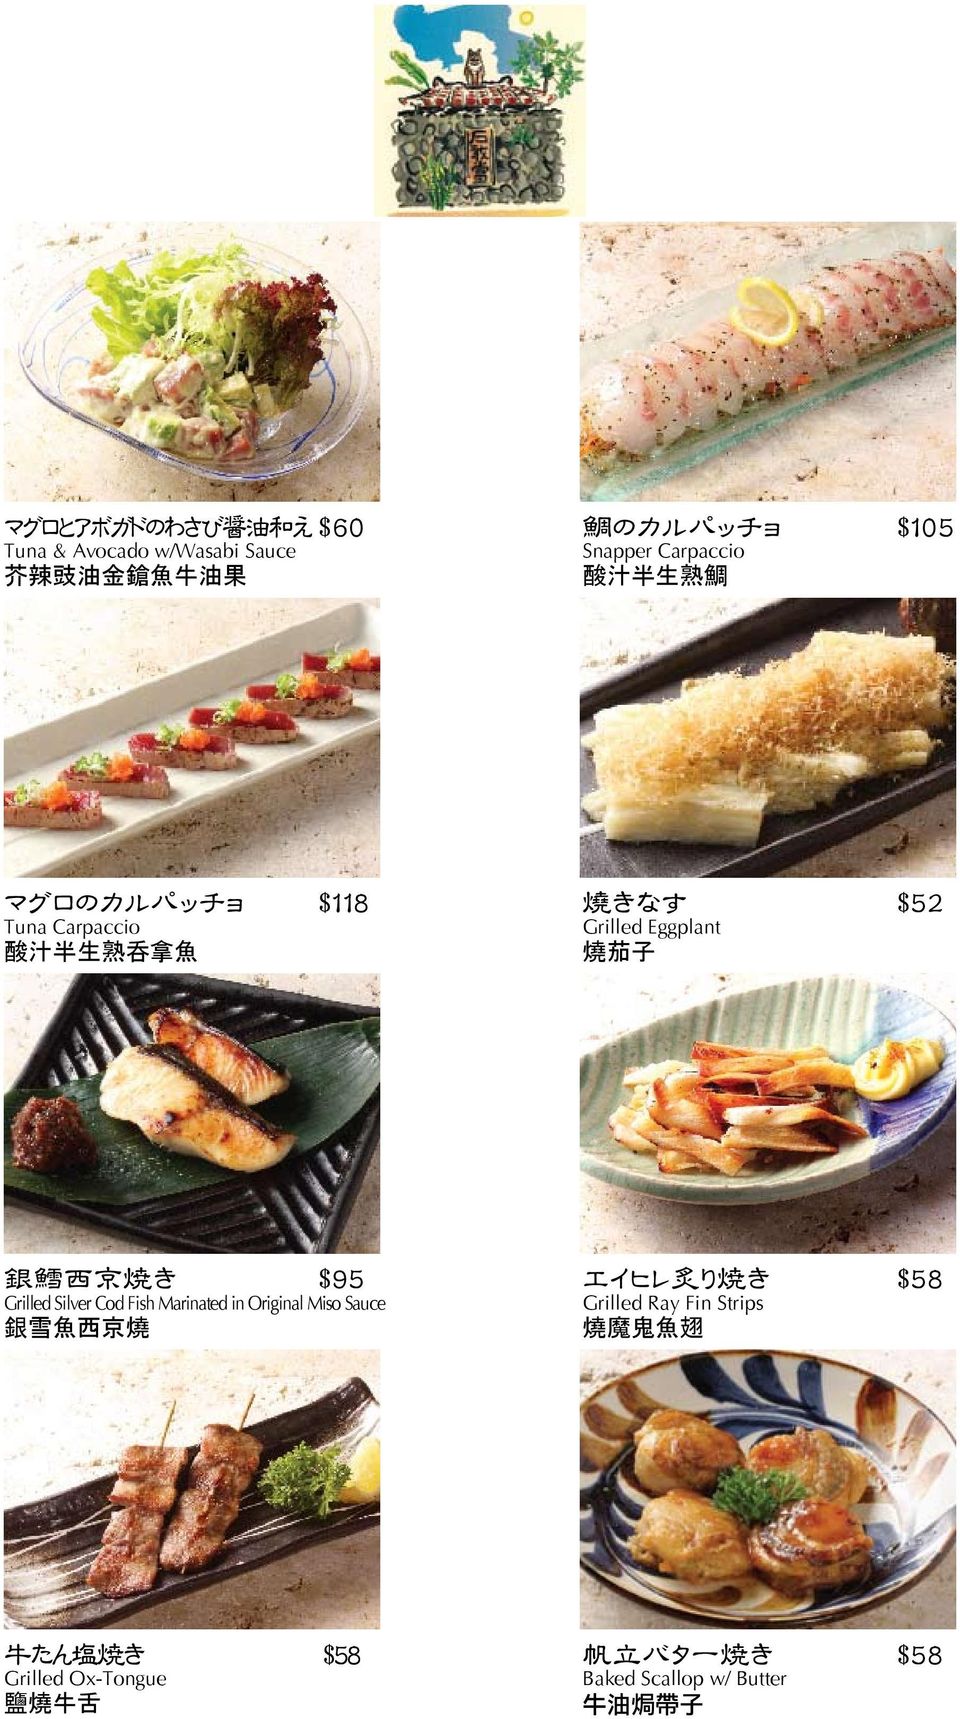 西 京 焼 き $95 Grilled Silver Cod Fish Marinated in Original Miso Sauce 銀 雪 魚 西 京 燒 エイヒレ 炙 り 焼 き $58 Grilled